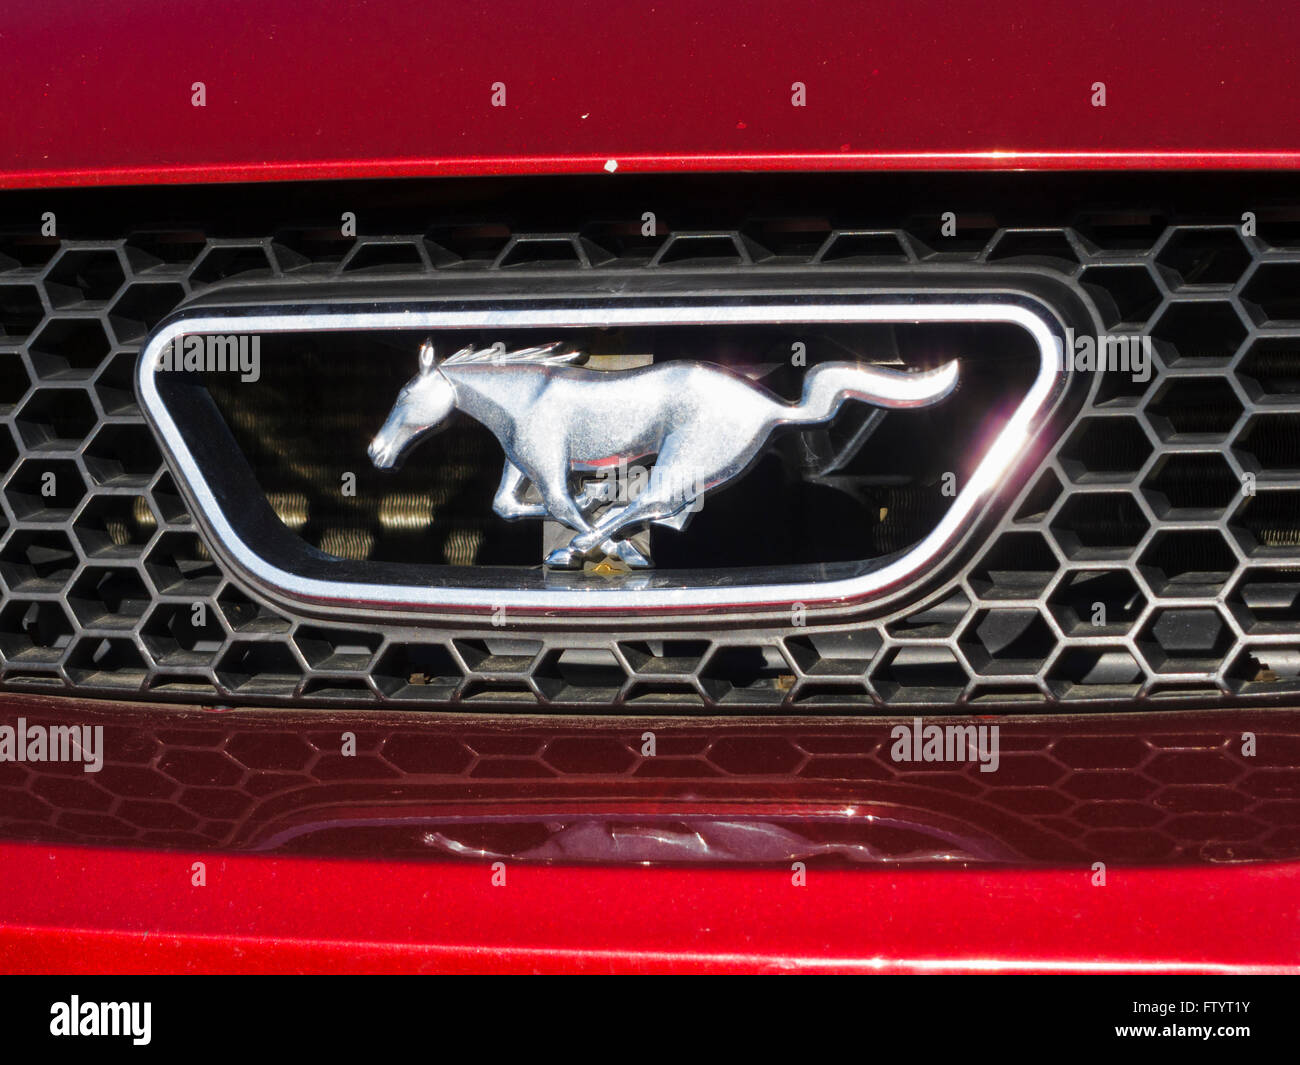 Emblema de Parrilla Ford Mustang Foto de stock